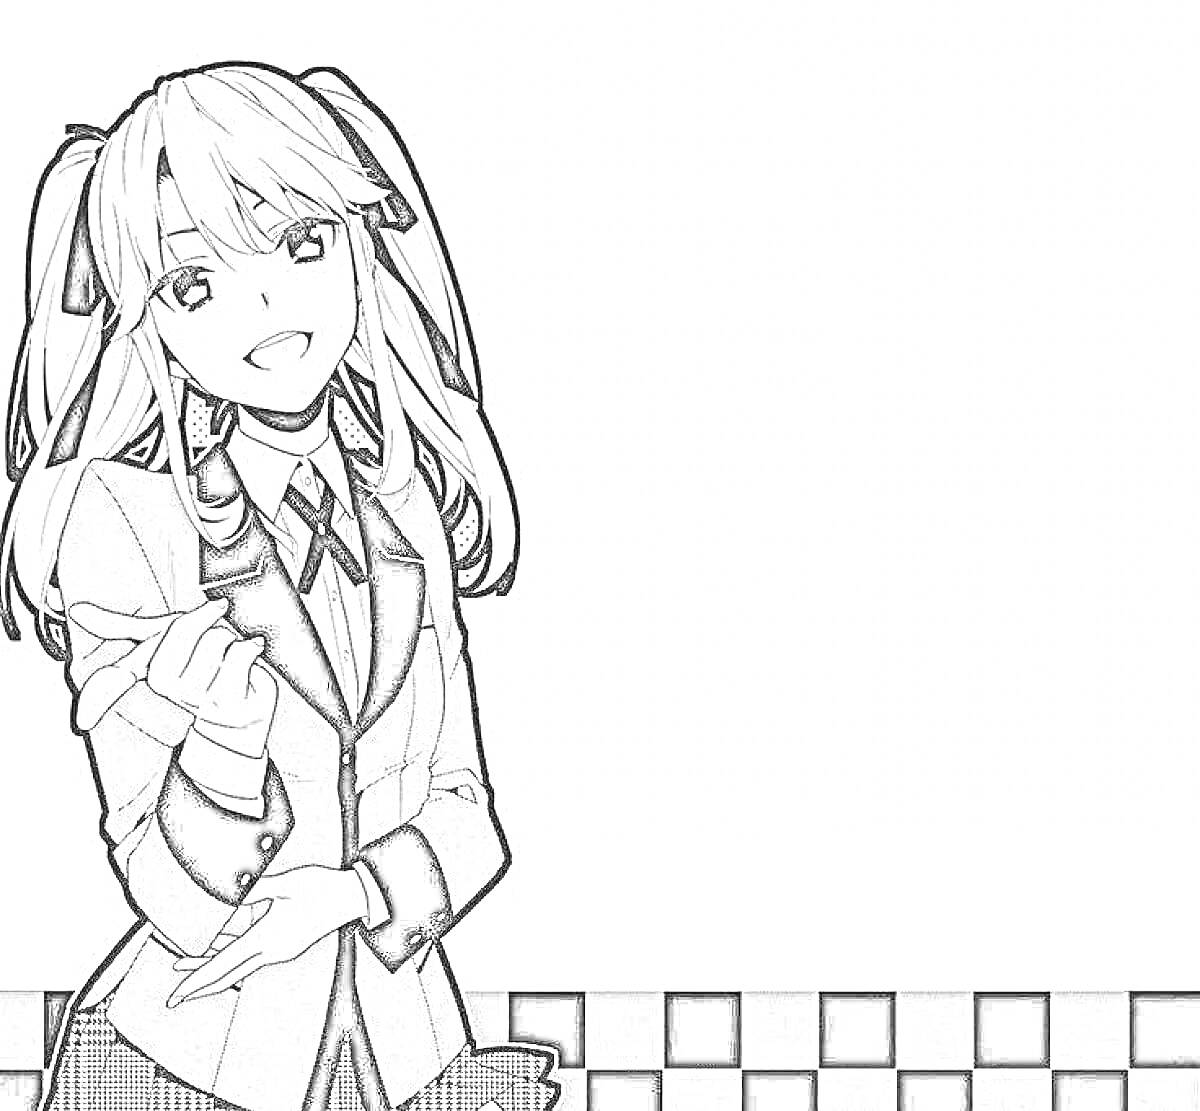 Раскраска Девушка с длинными волосами в школьной форме на фоне с черно-белыми клетками